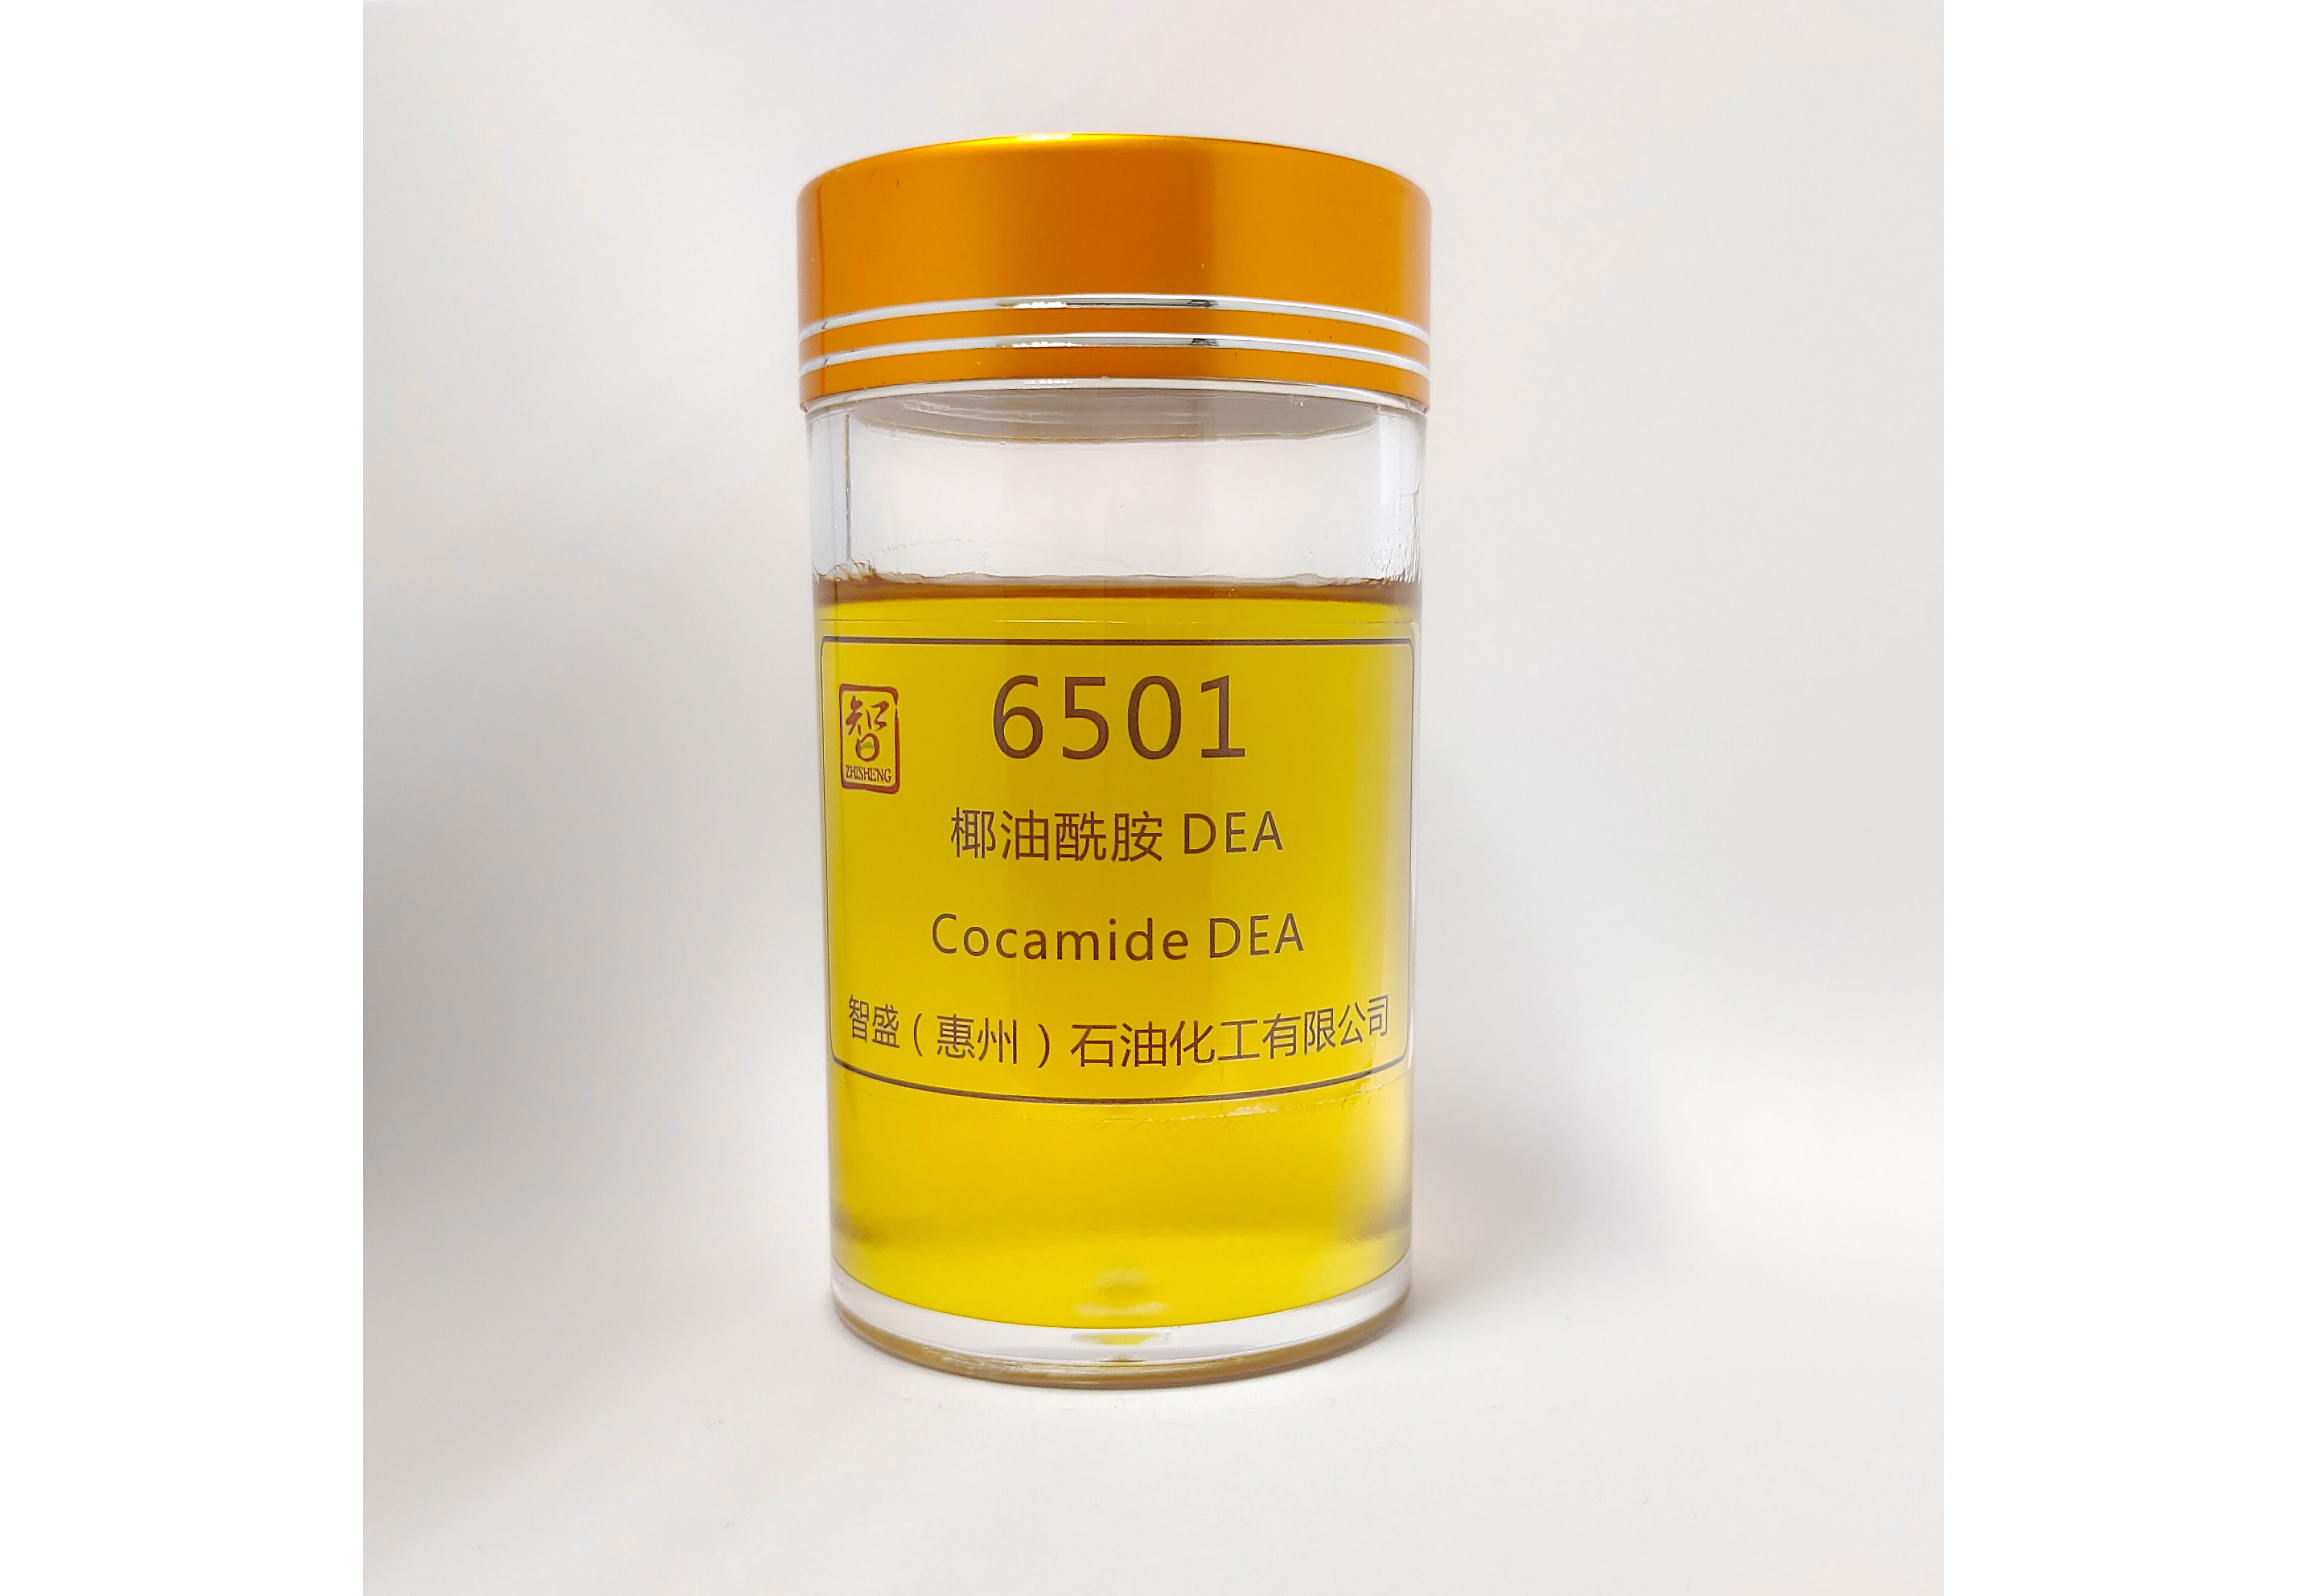  j  椰油酰胺二乙醇胺（6501）